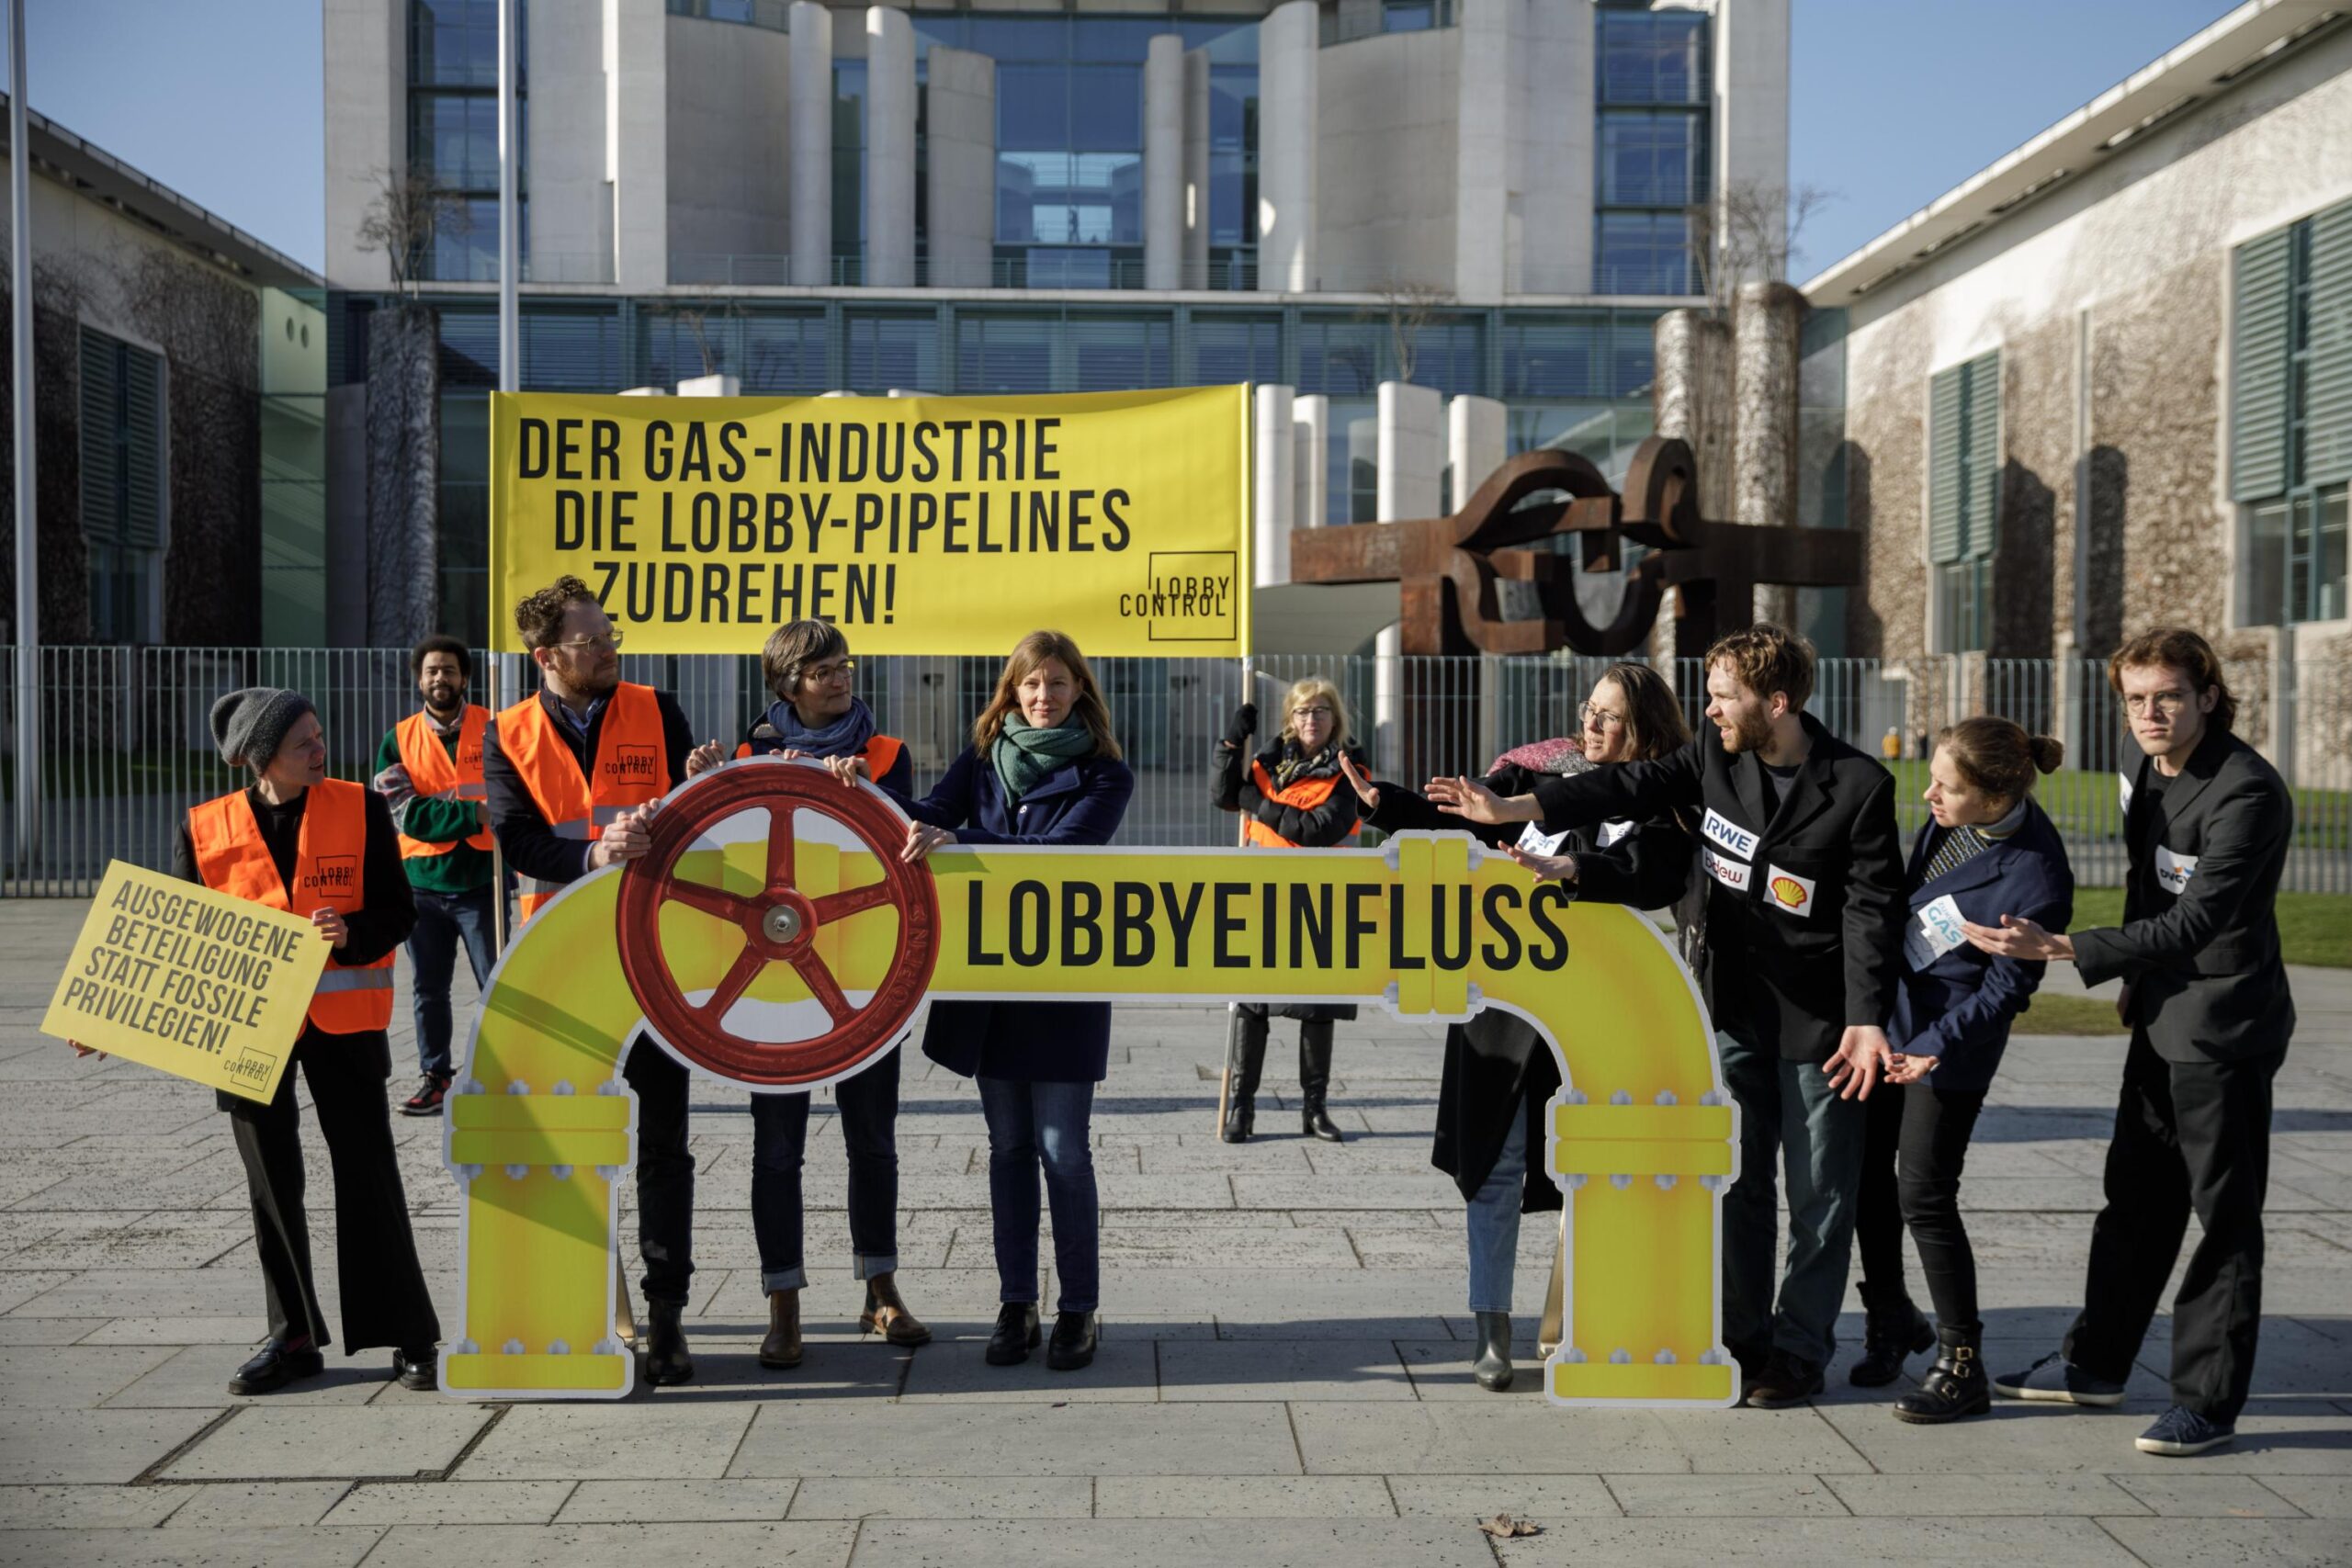 Der Gas-Industrie die Lobby-Pipelines zudrehen: Aktion vor dem Kanzleramt